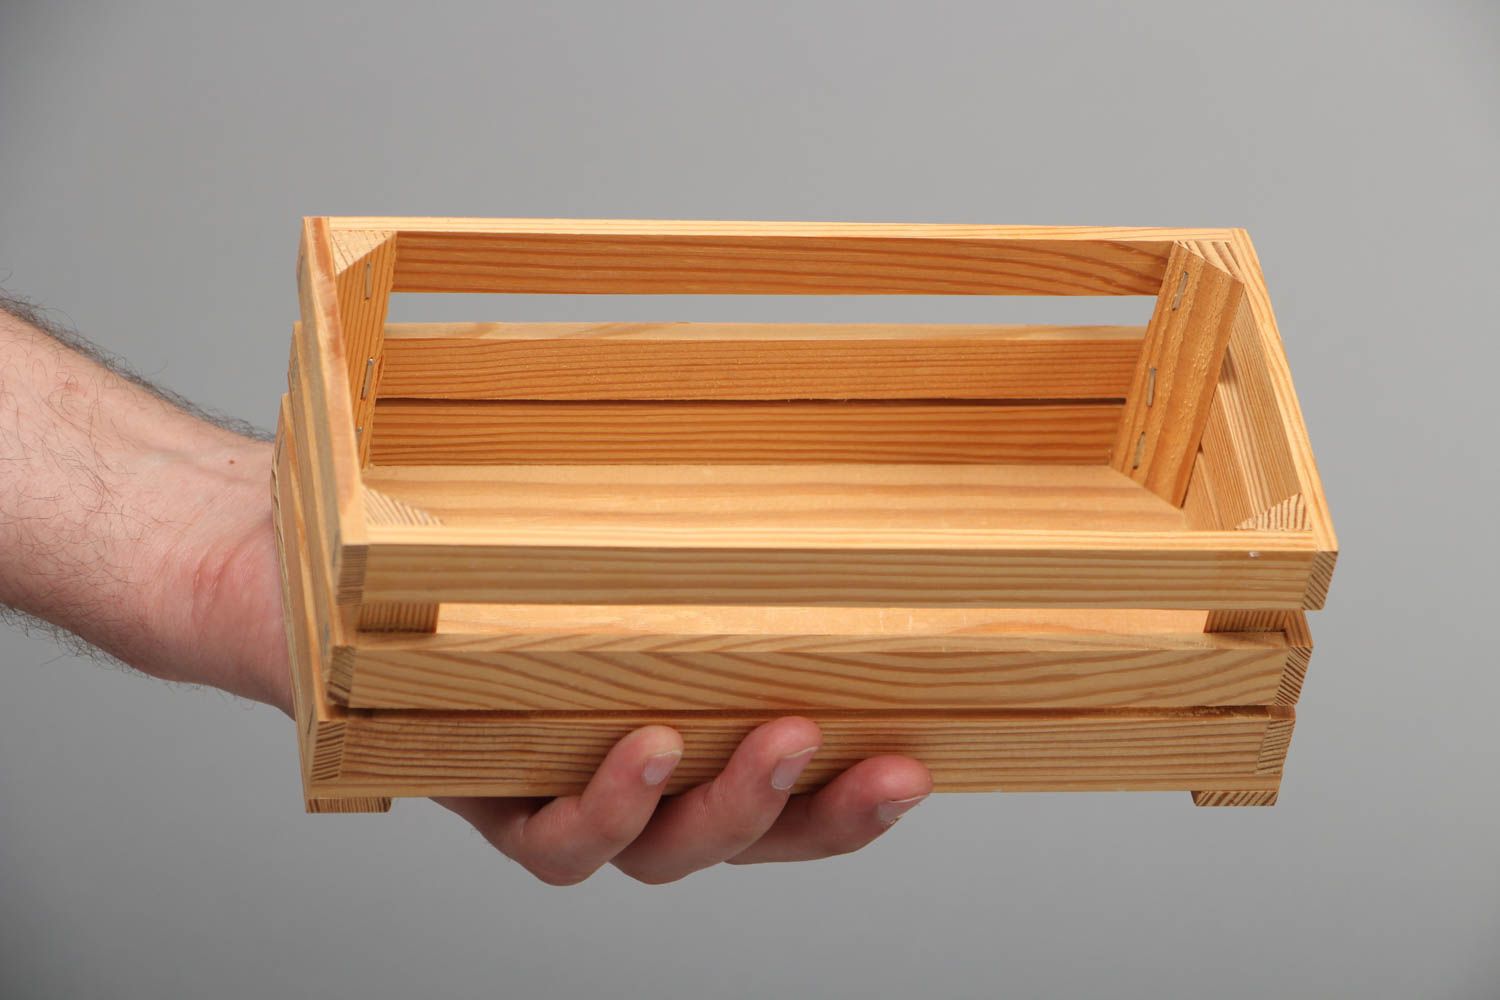 деревянные ящики для кухни